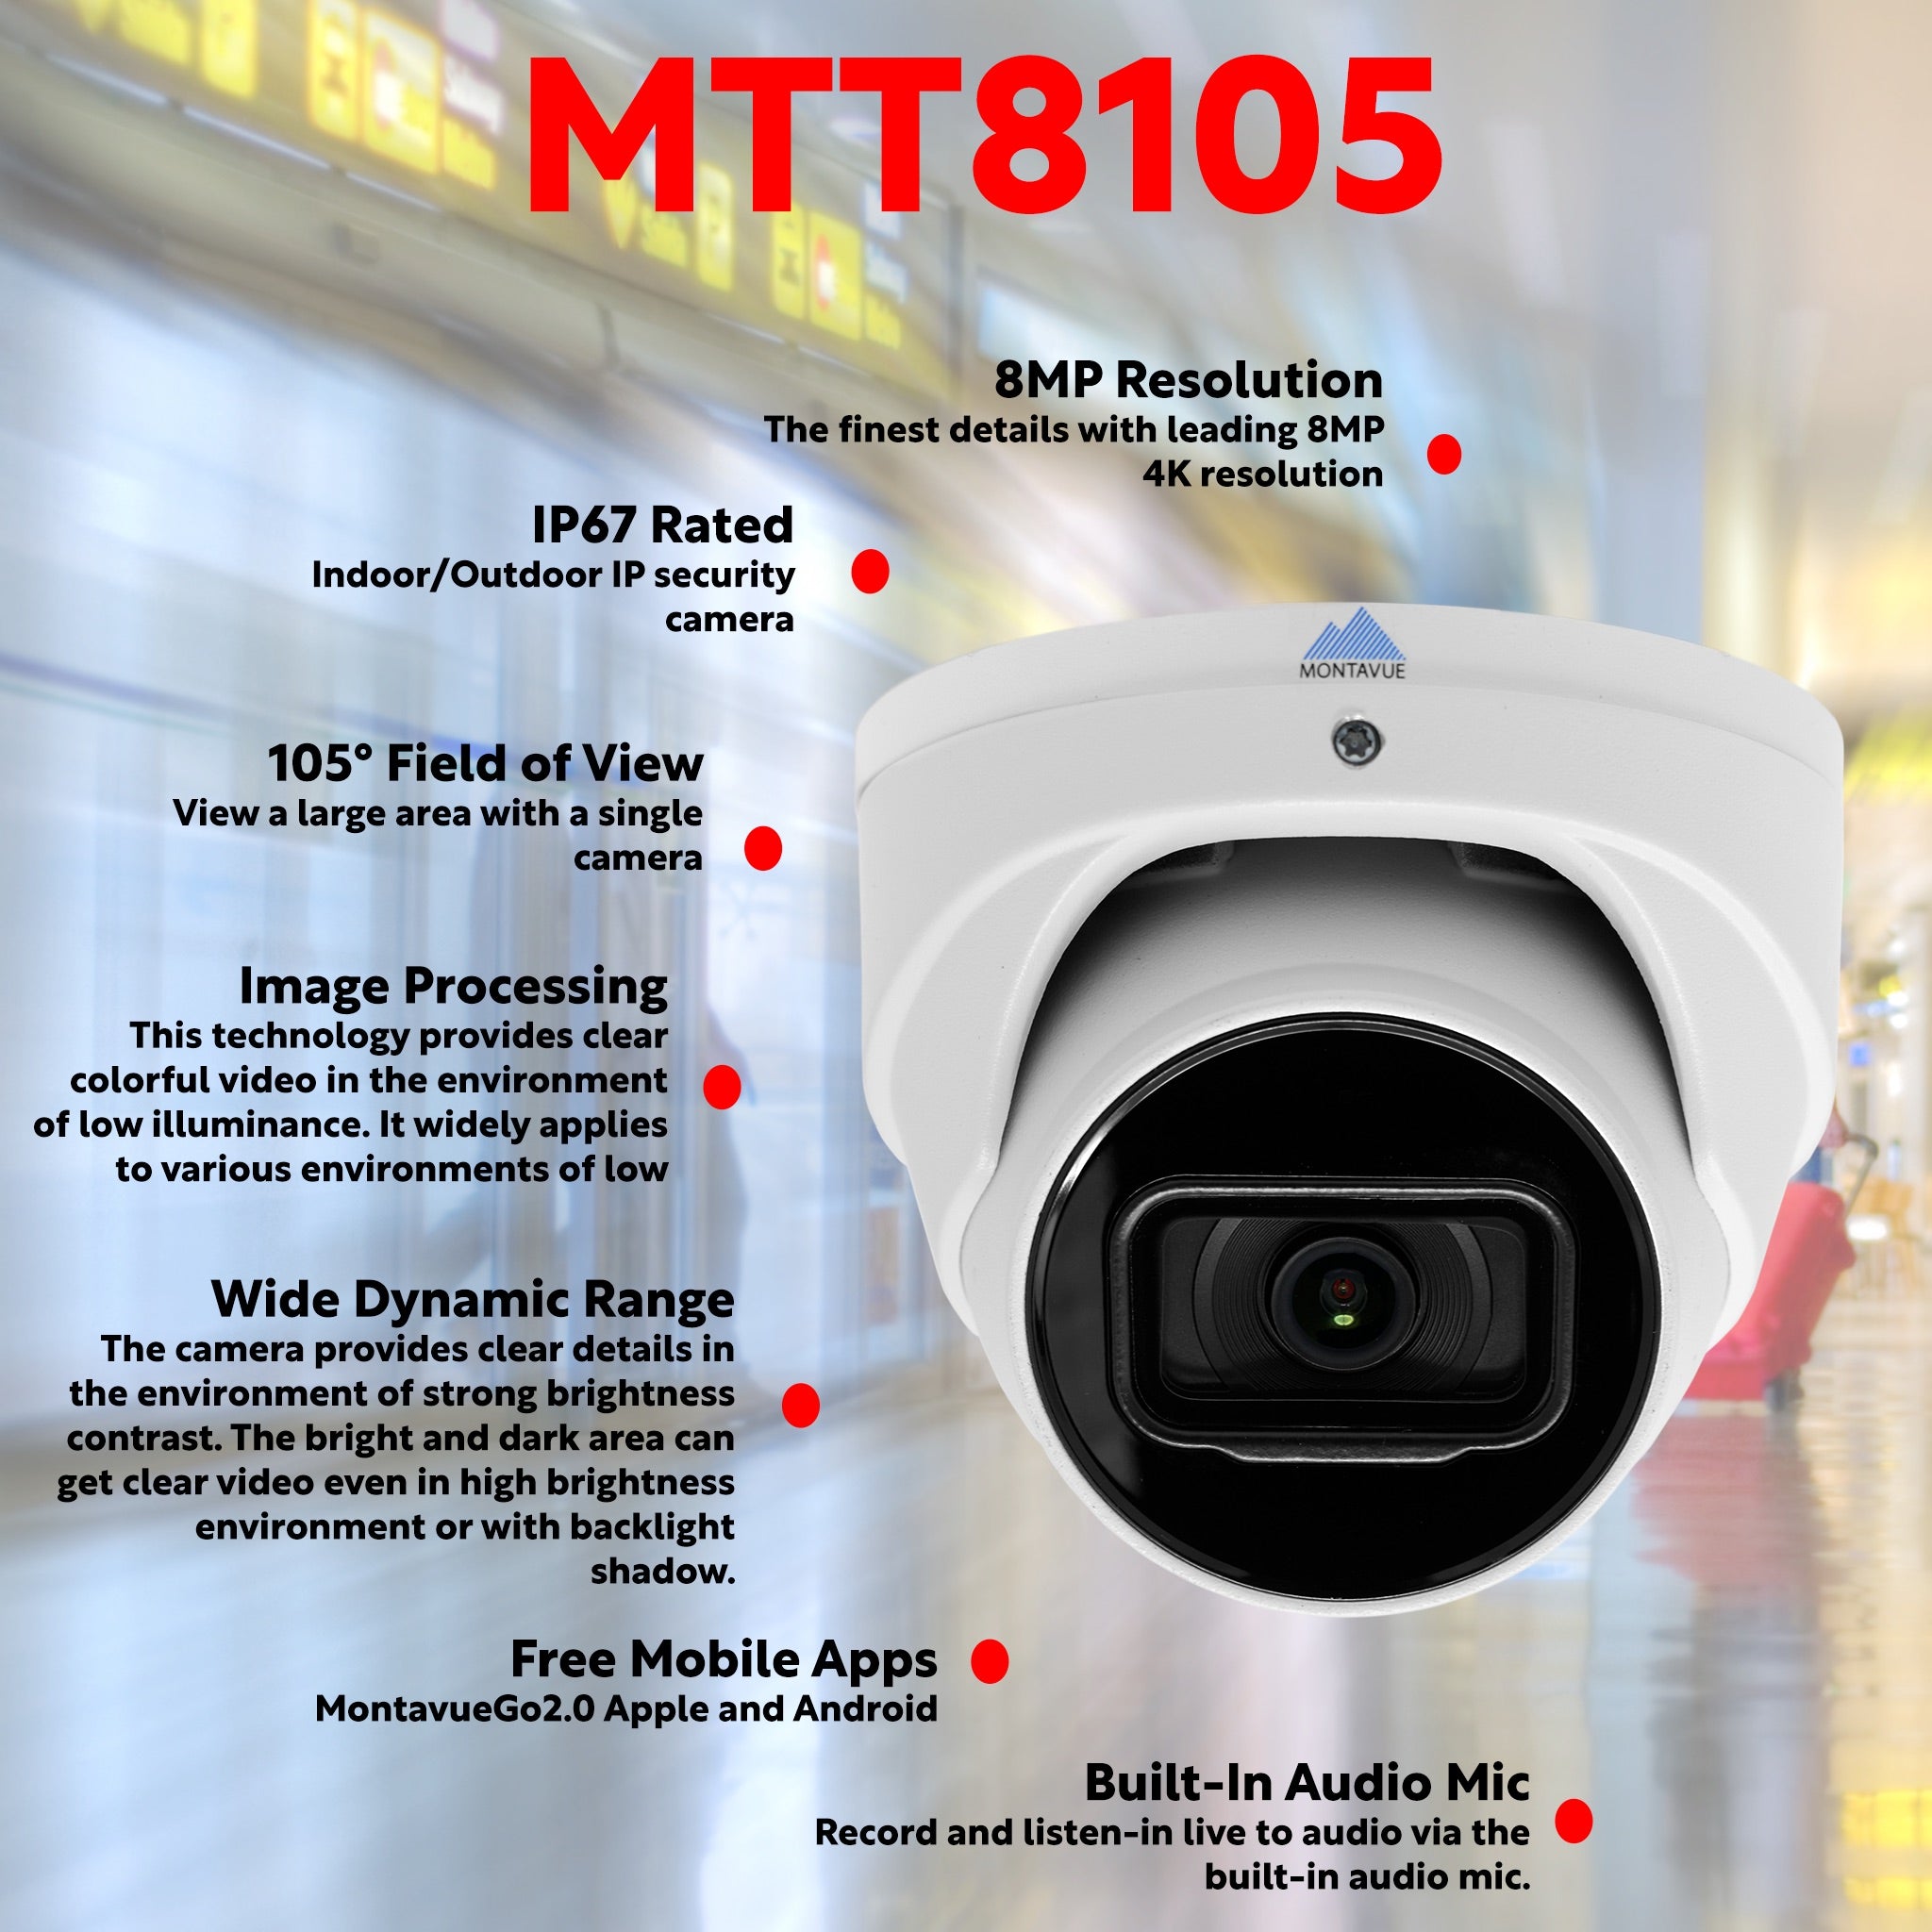 Caméra surveillance PIR Wifi 4x4x4cm autonome 30 jours